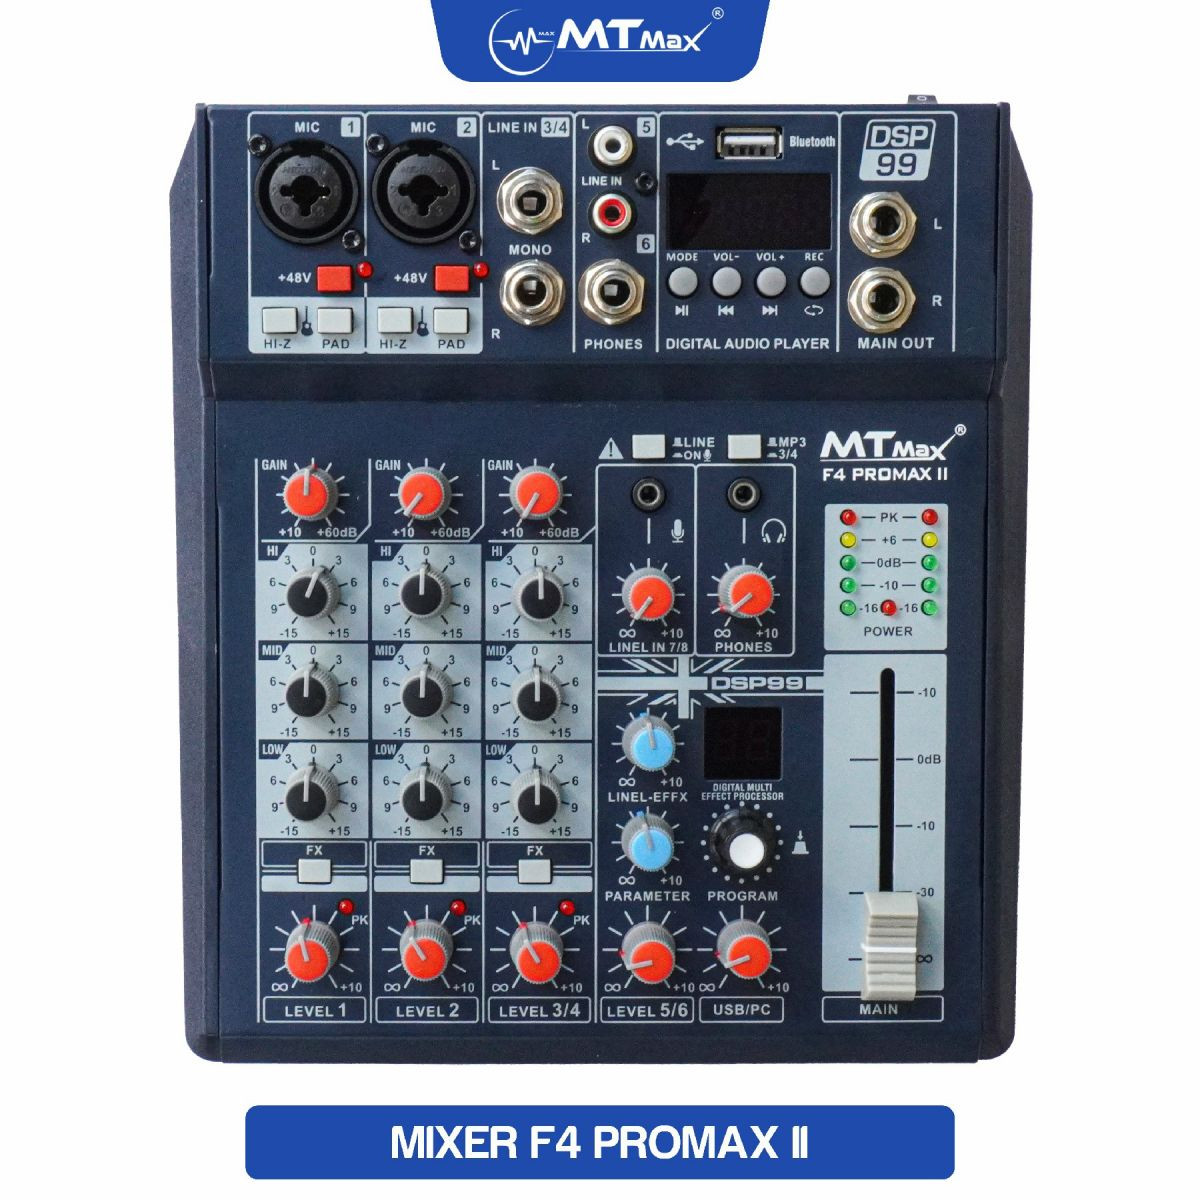 Bàn trộn Mixer MTMax F4 ProMax II - 99 chế độ vang số DSP - 4 kênh, 2 màn hình led hiển thị - Có Bluetooth, nguồn 48V cho micro condenser - Chuyển đổi thành sound card thu âm chuyên nghiệp - Dùng được với loa kéo, amply, dàn karaoke